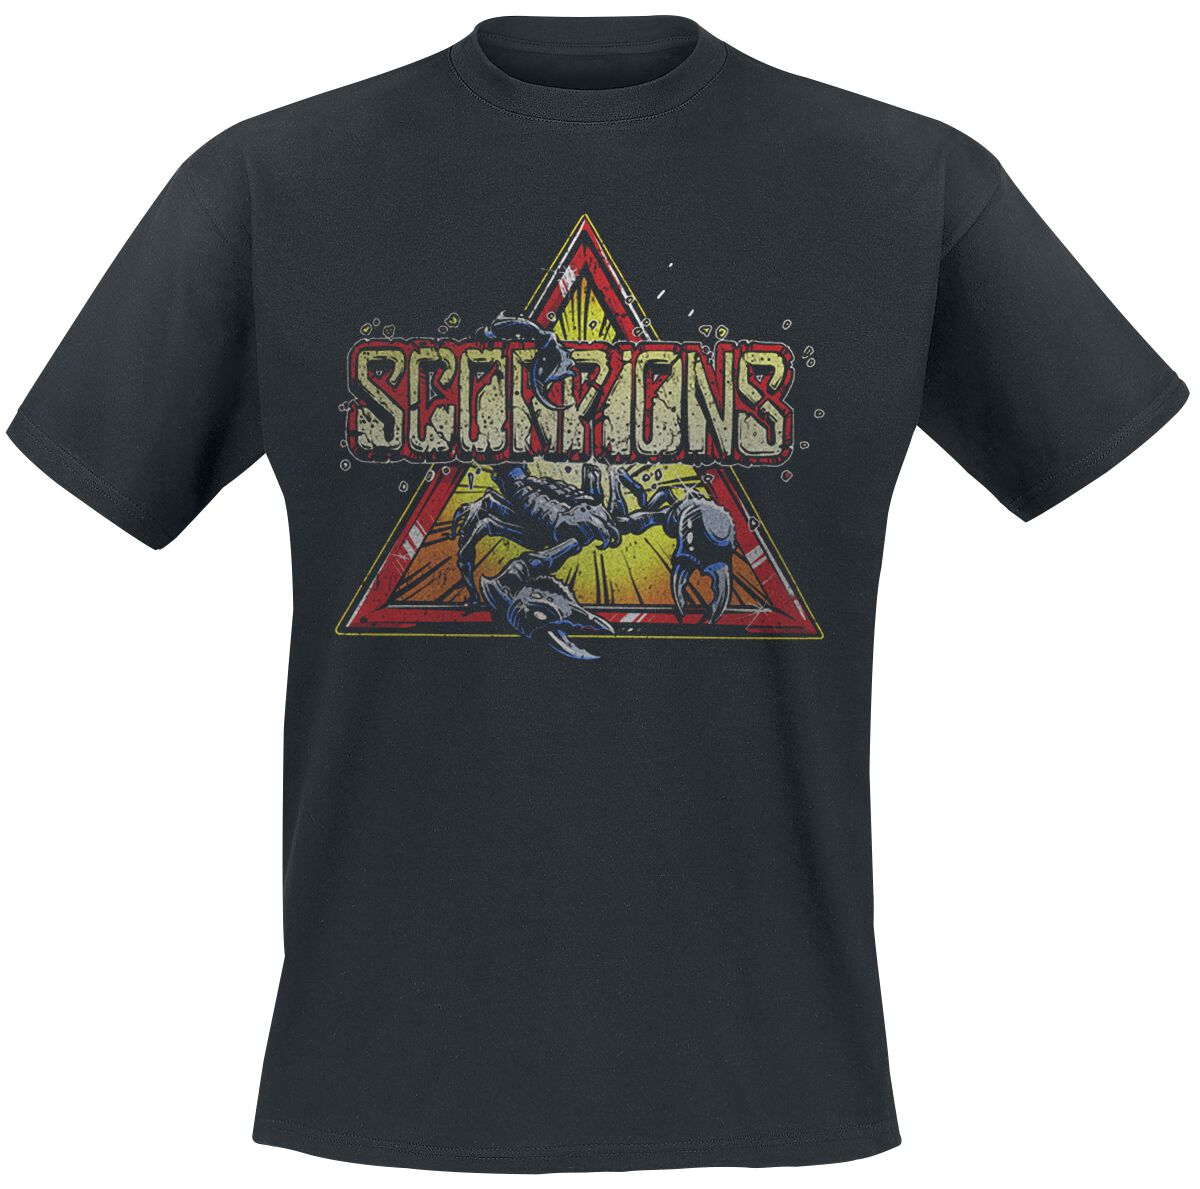 Scorpions T-Shirt - Triangle Scorpion - S bis 3XL - für Männer - Größe S - schwarz  - Lizenziertes Merchandise!